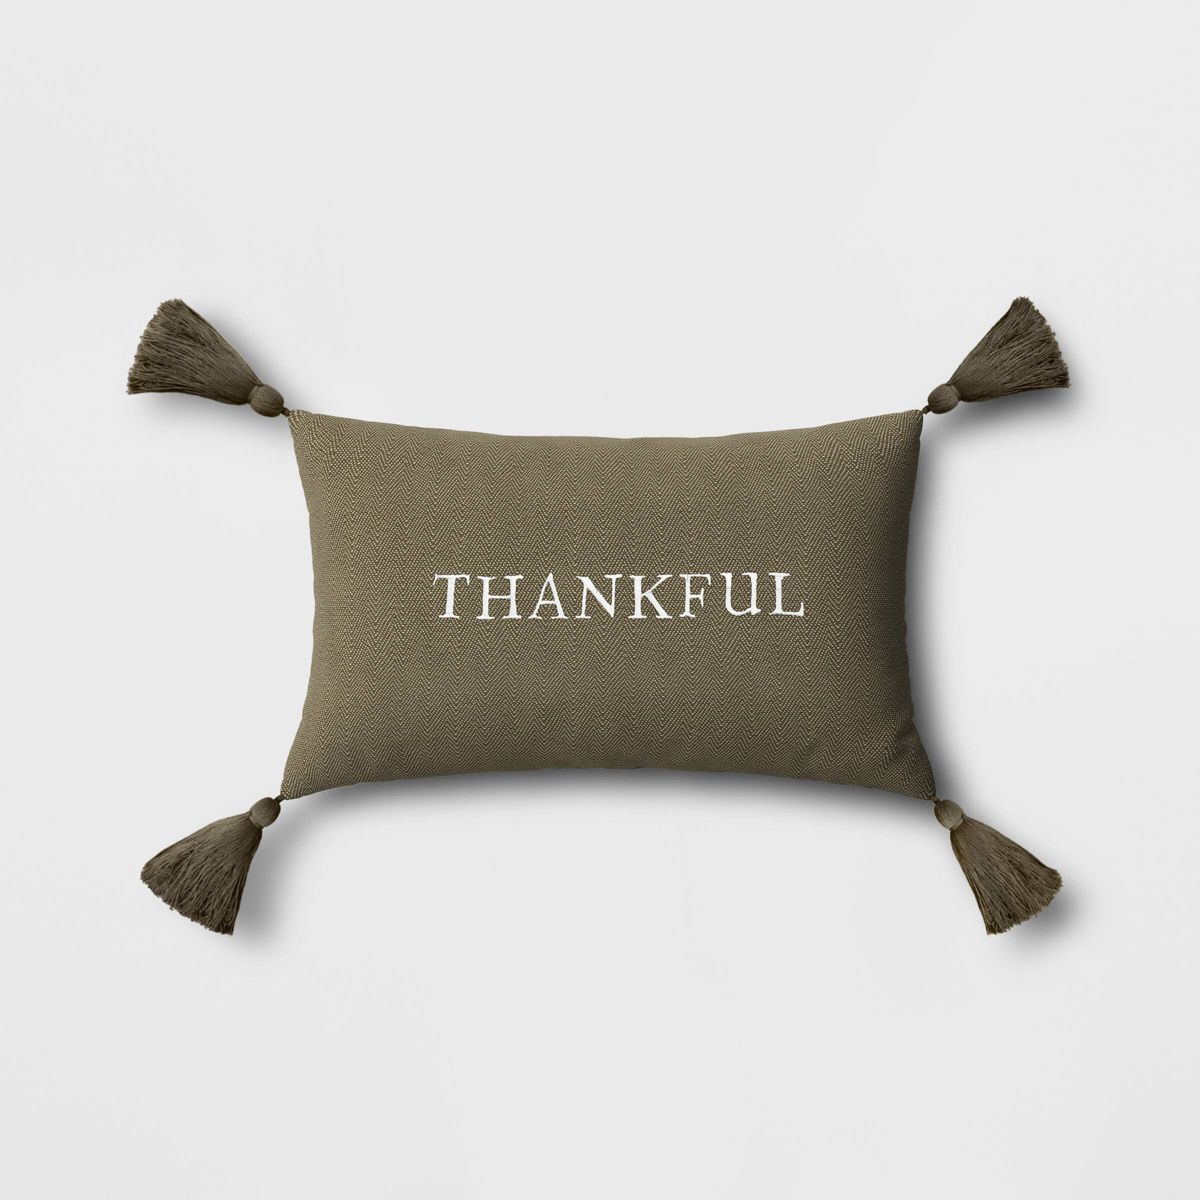 Oversize Thankful Embroidered Herringbone Lumbar Throw Pillow Dark Green - Threshold™ | Target